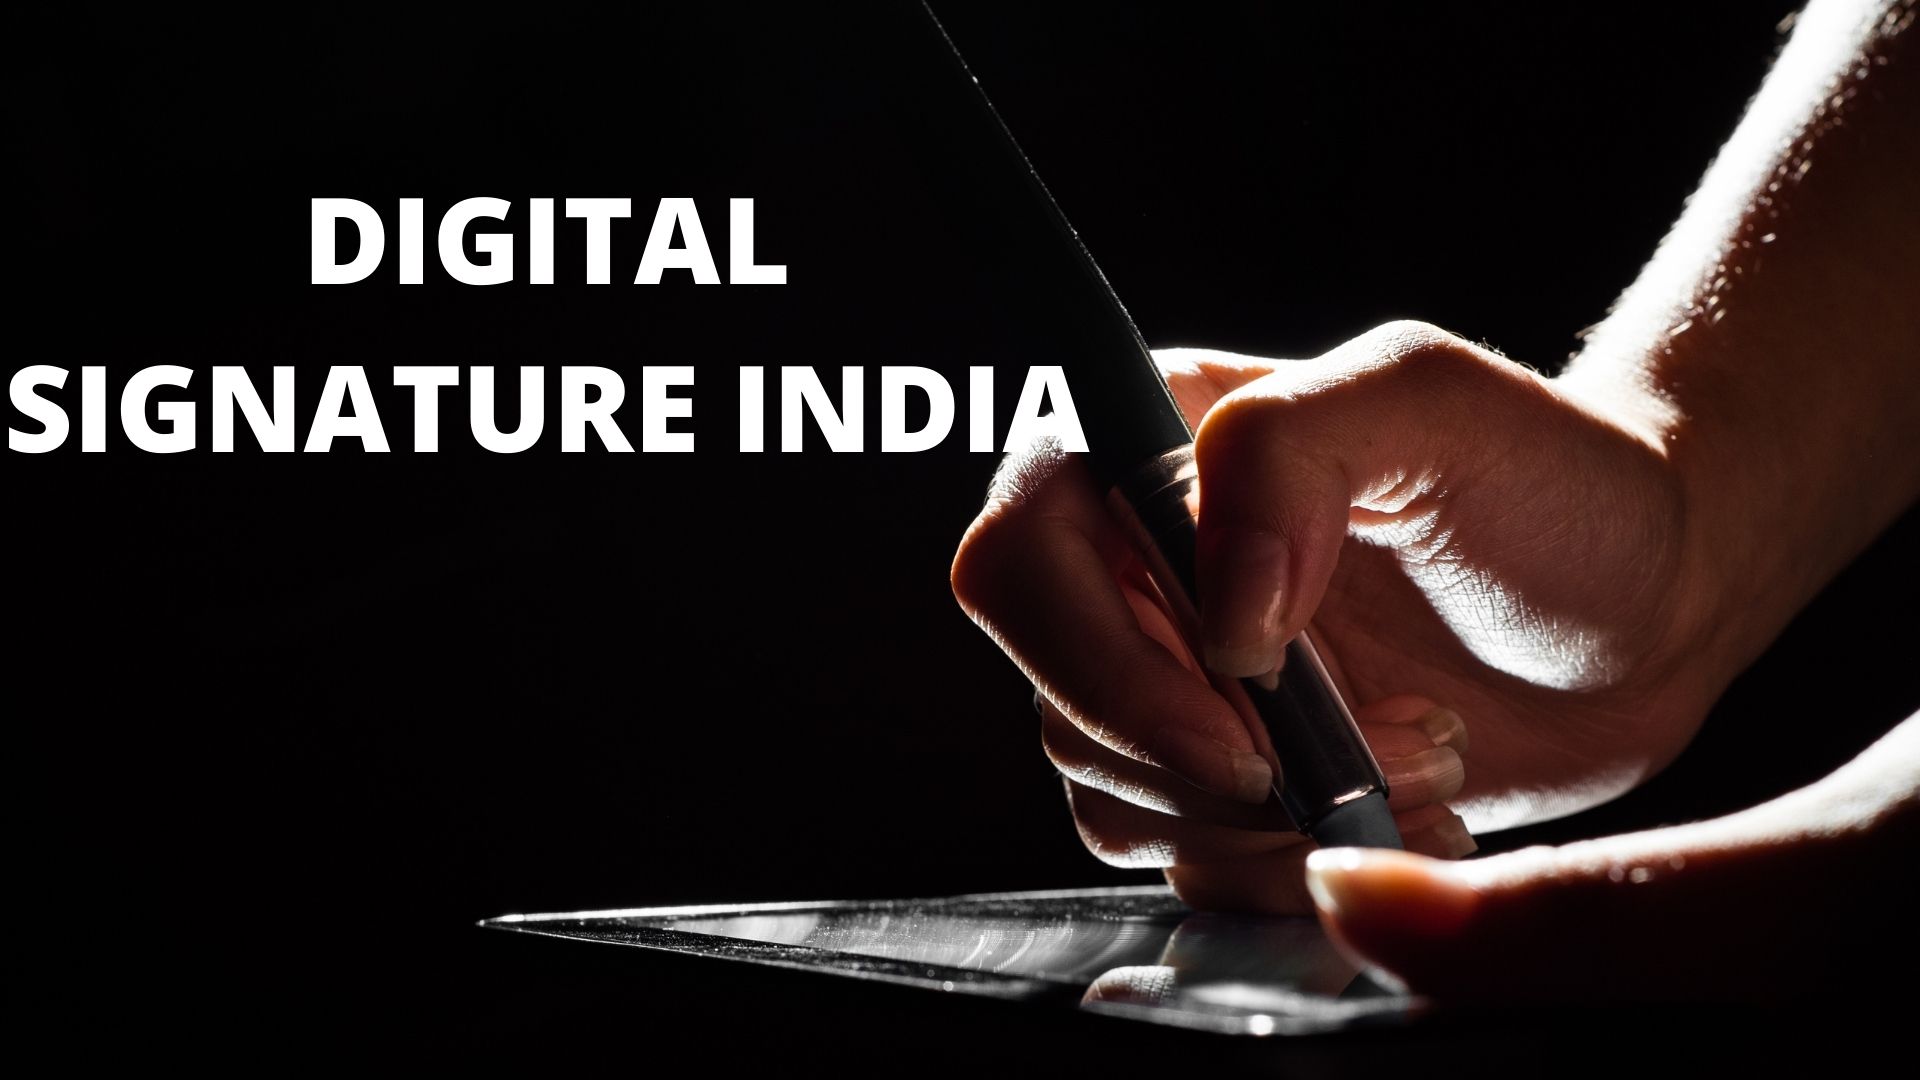 Digital Signature India